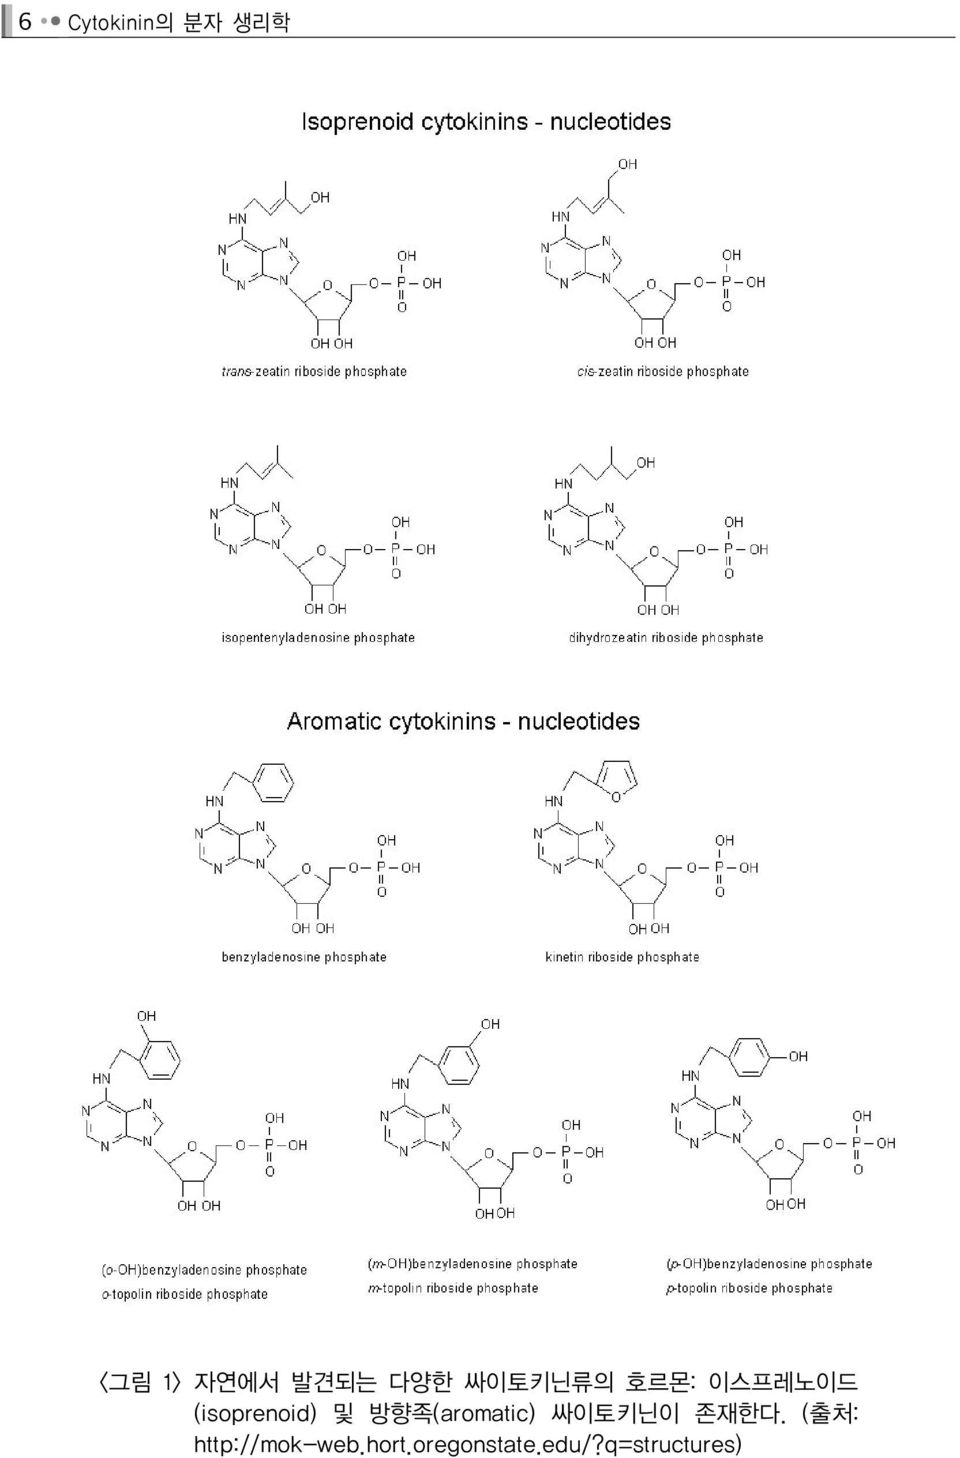 방향족(aromatic) 싸이토키닌이 존재한다.